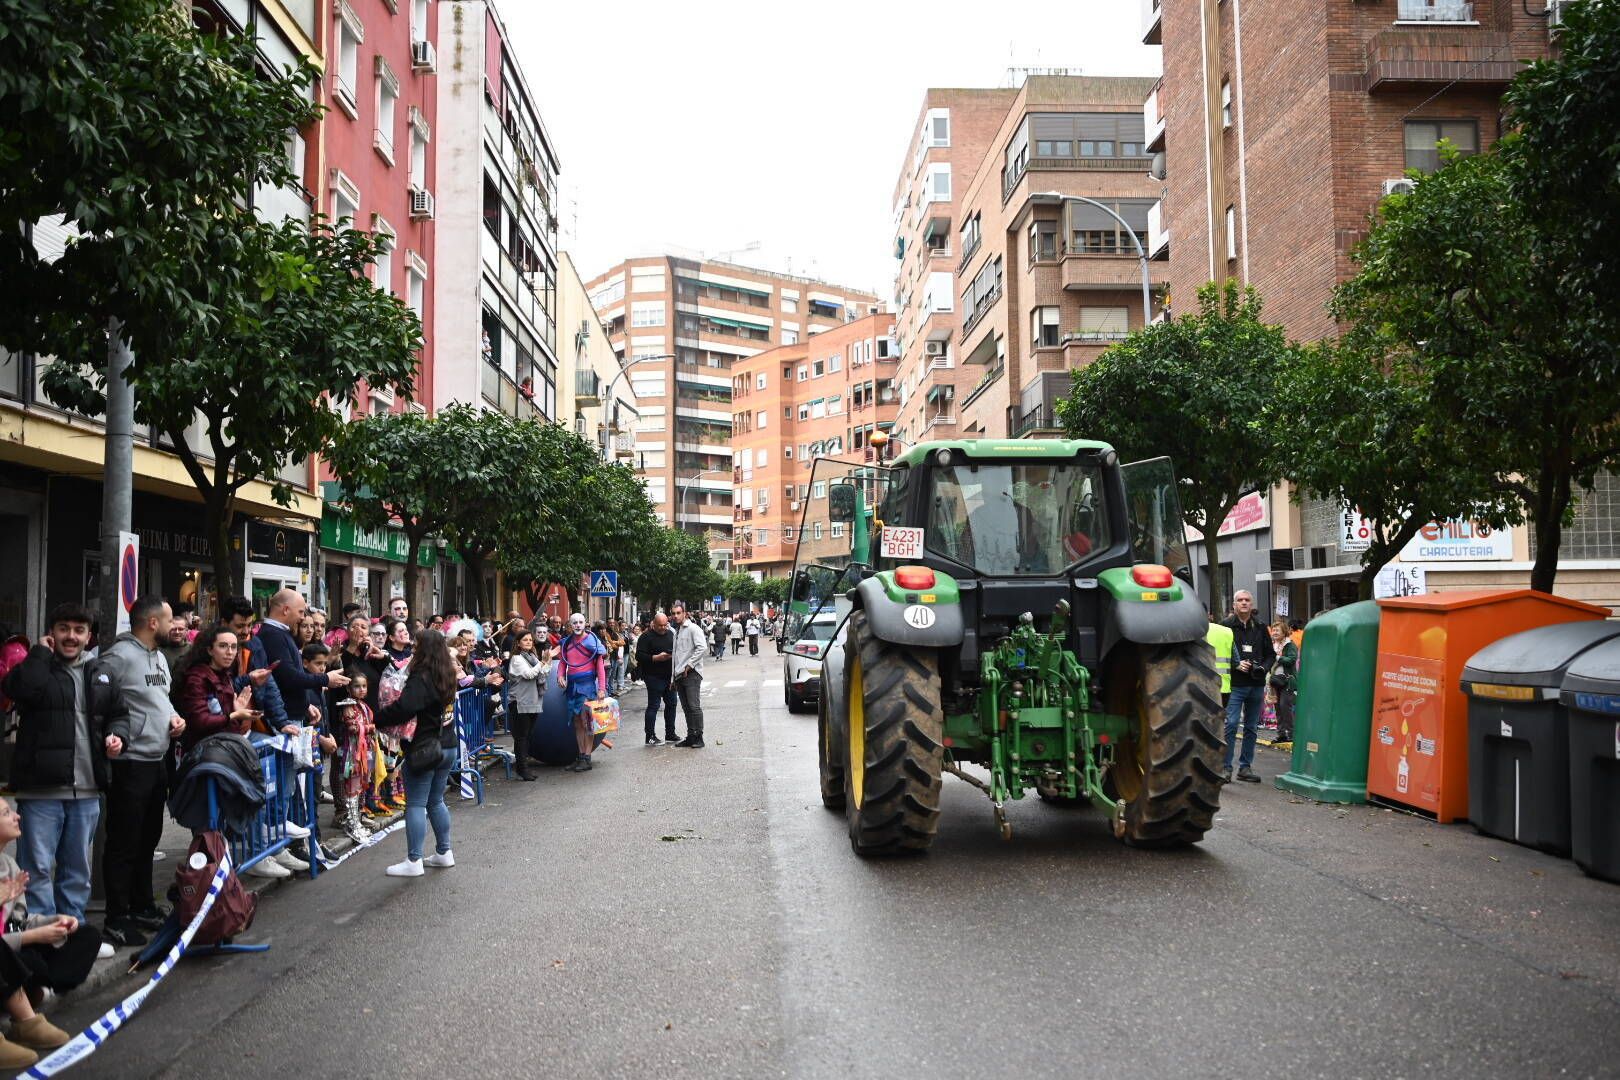 Galería | Los tractores abren el desfile de comparsas del Carnaval de Badajoz